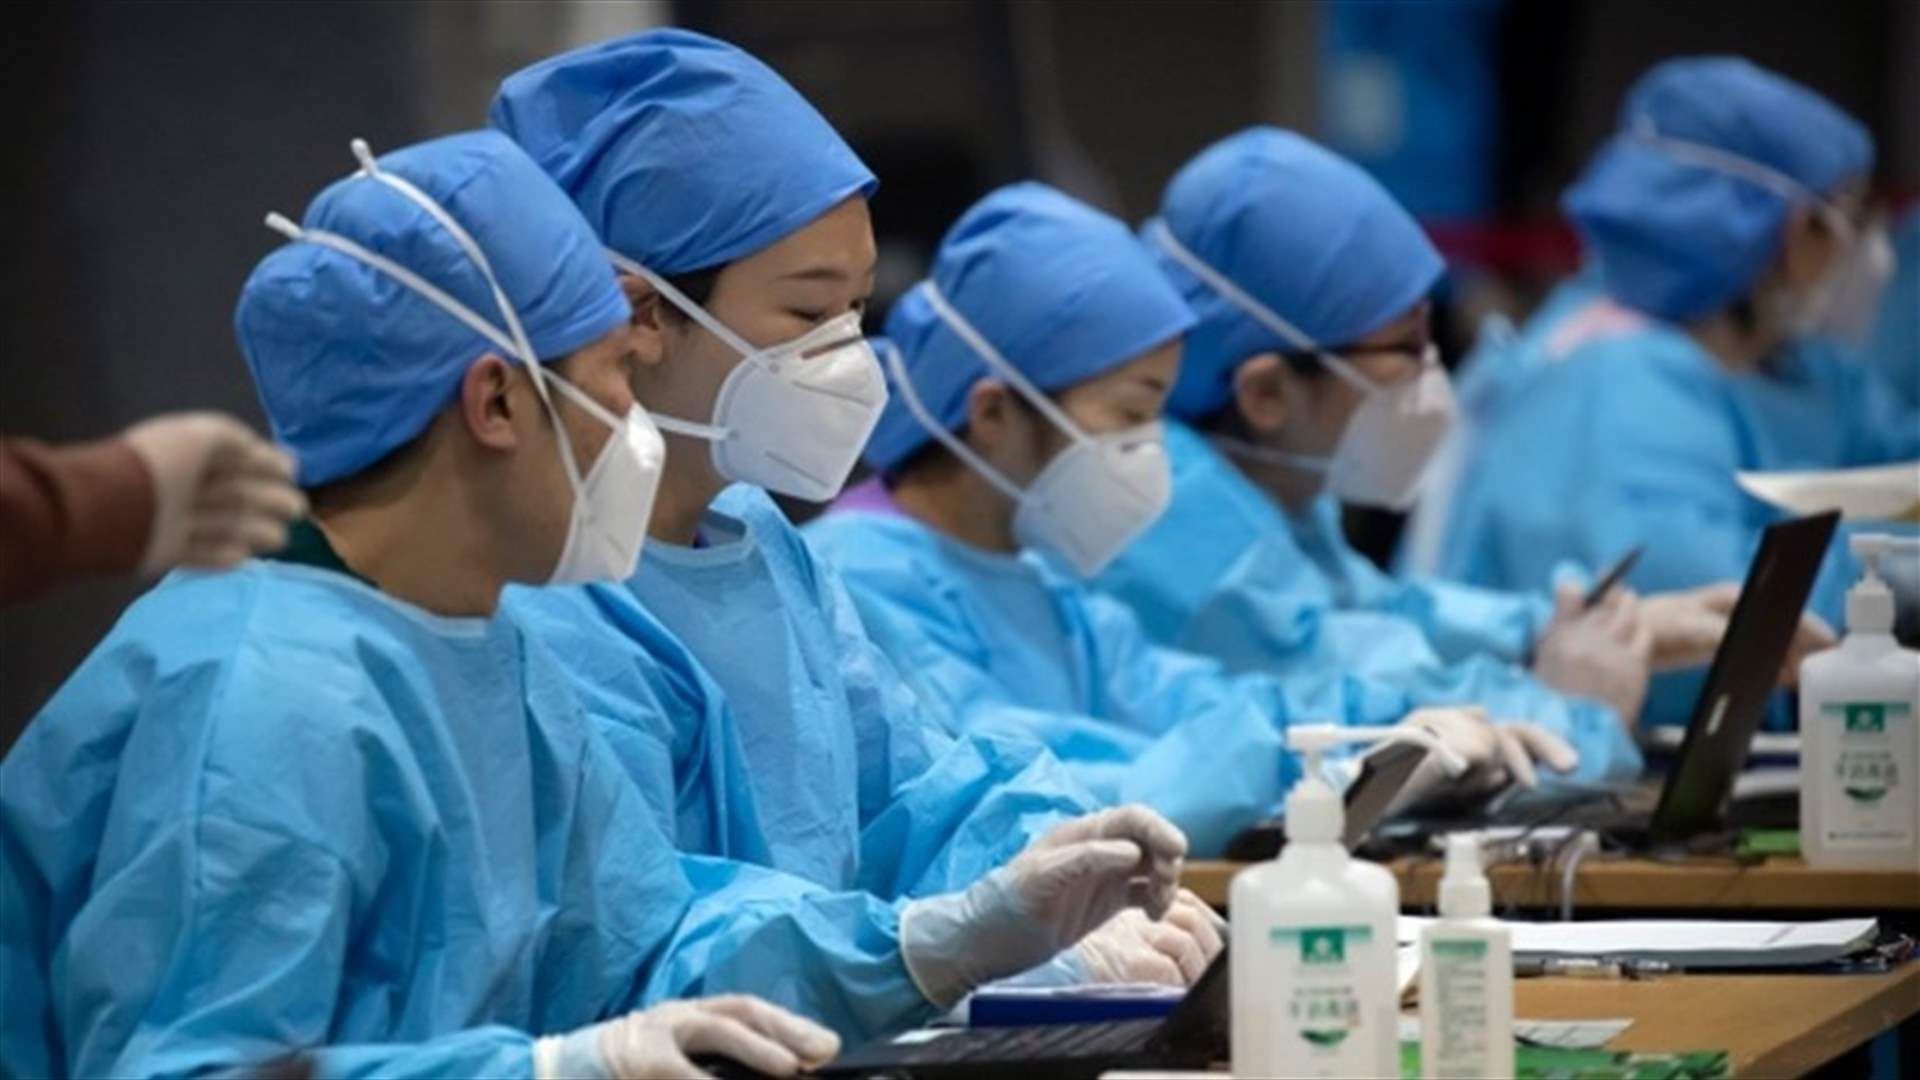 بعد ازدياد الإصابات بفيروس كورونا... الصين تبني مستشفى خلال 5 أيام